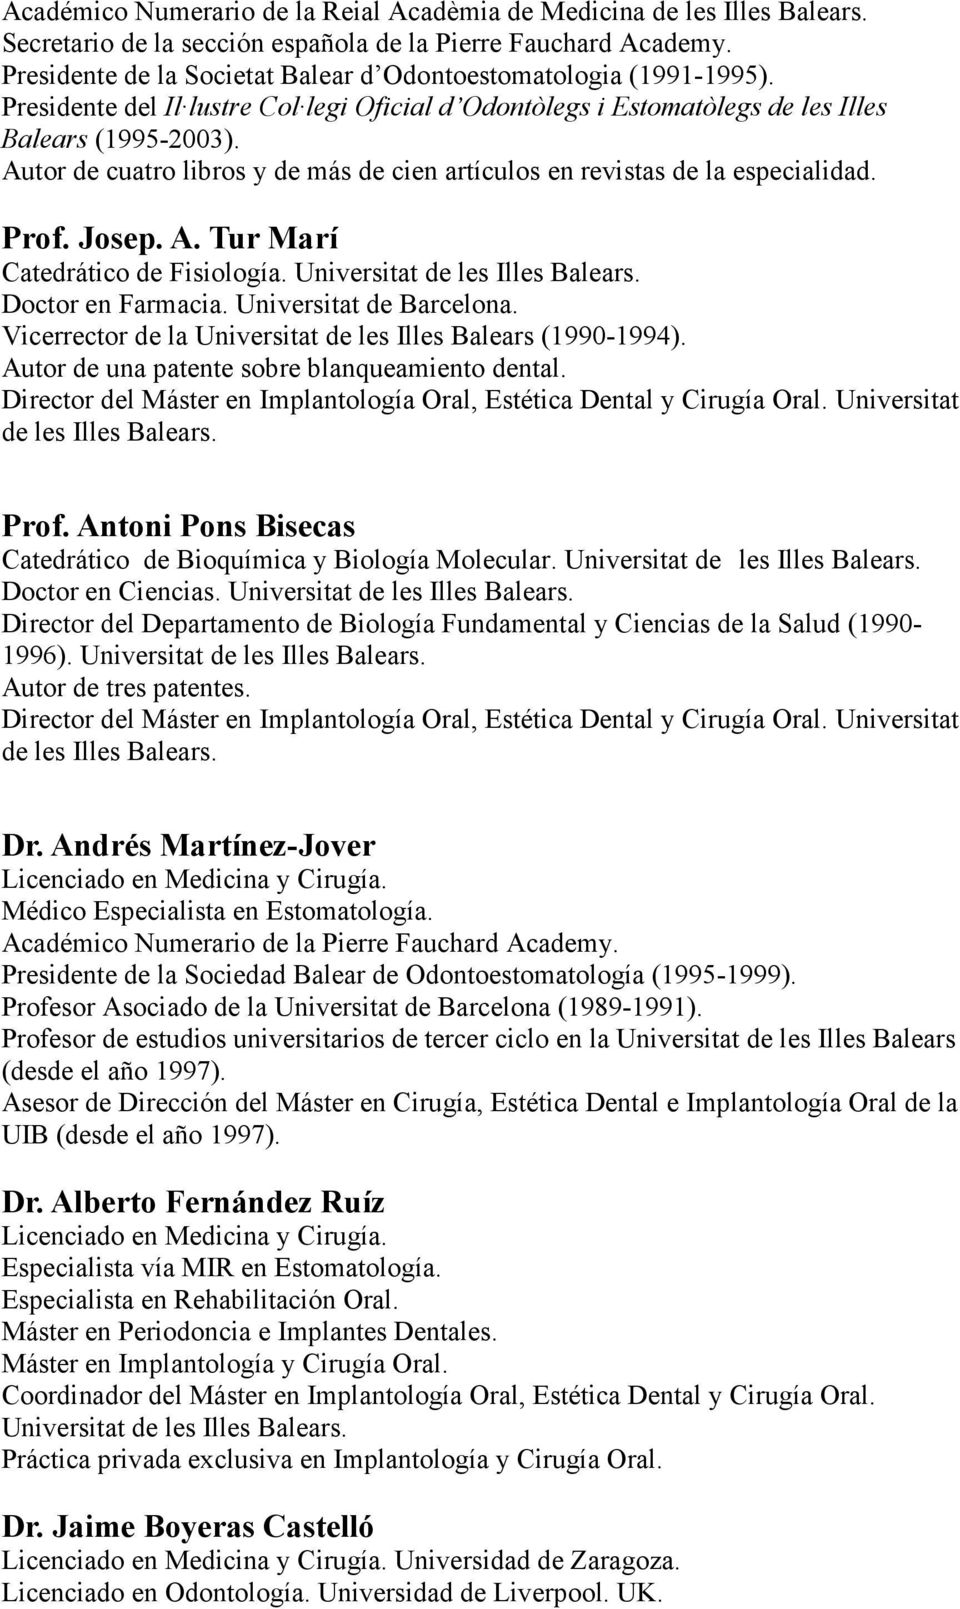 Autor de cuatro libros y de más de cien artículos en revistas de la especialidad. Prof. Josep. A. Tur Marí Catedrático de Fisiología. Universitat de les Illes Balears. Doctor en Farmacia.